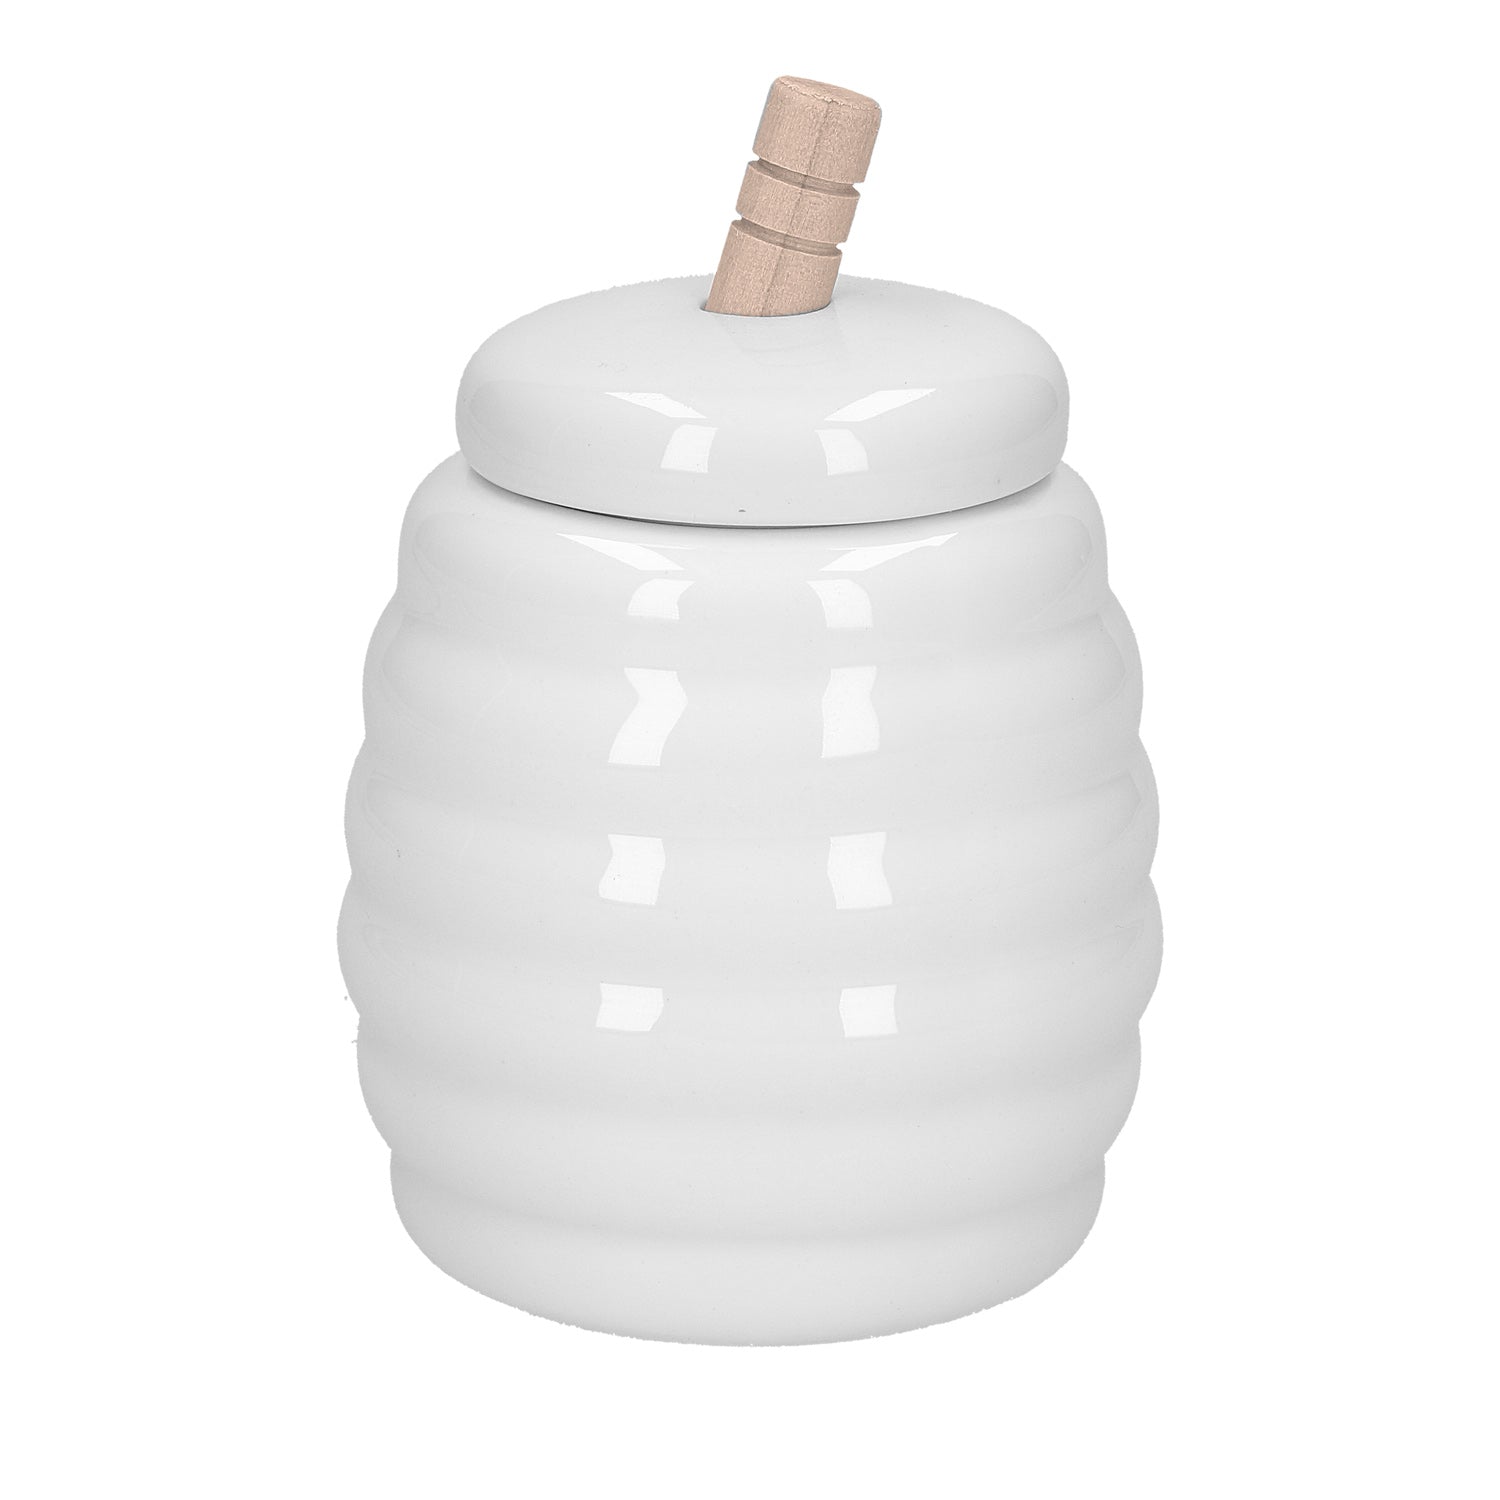 Vasetto miele in porcellana lavorata con servimiele in legno. Dimensioni: 290 cc, h11 cm, Ø 8,5 Lavabile in lavastoviglie Utilizzabile in microonde Utilizzabile in forno tradizionale 